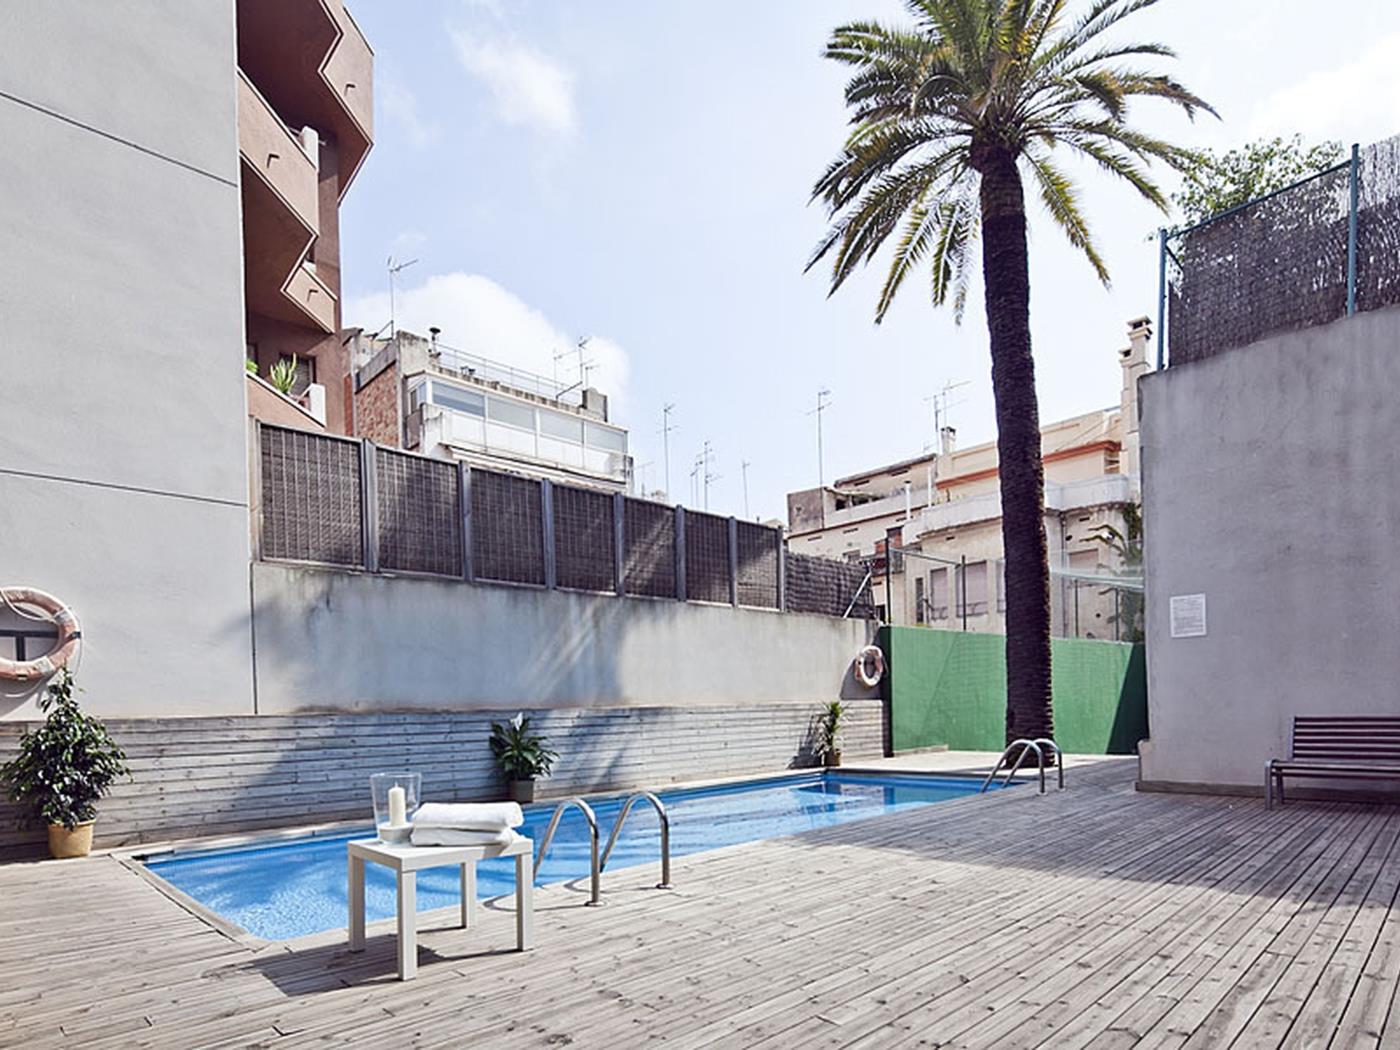 Wohnung mit Schwimmbad in Barcelona - My Space Barcelona Appartementen